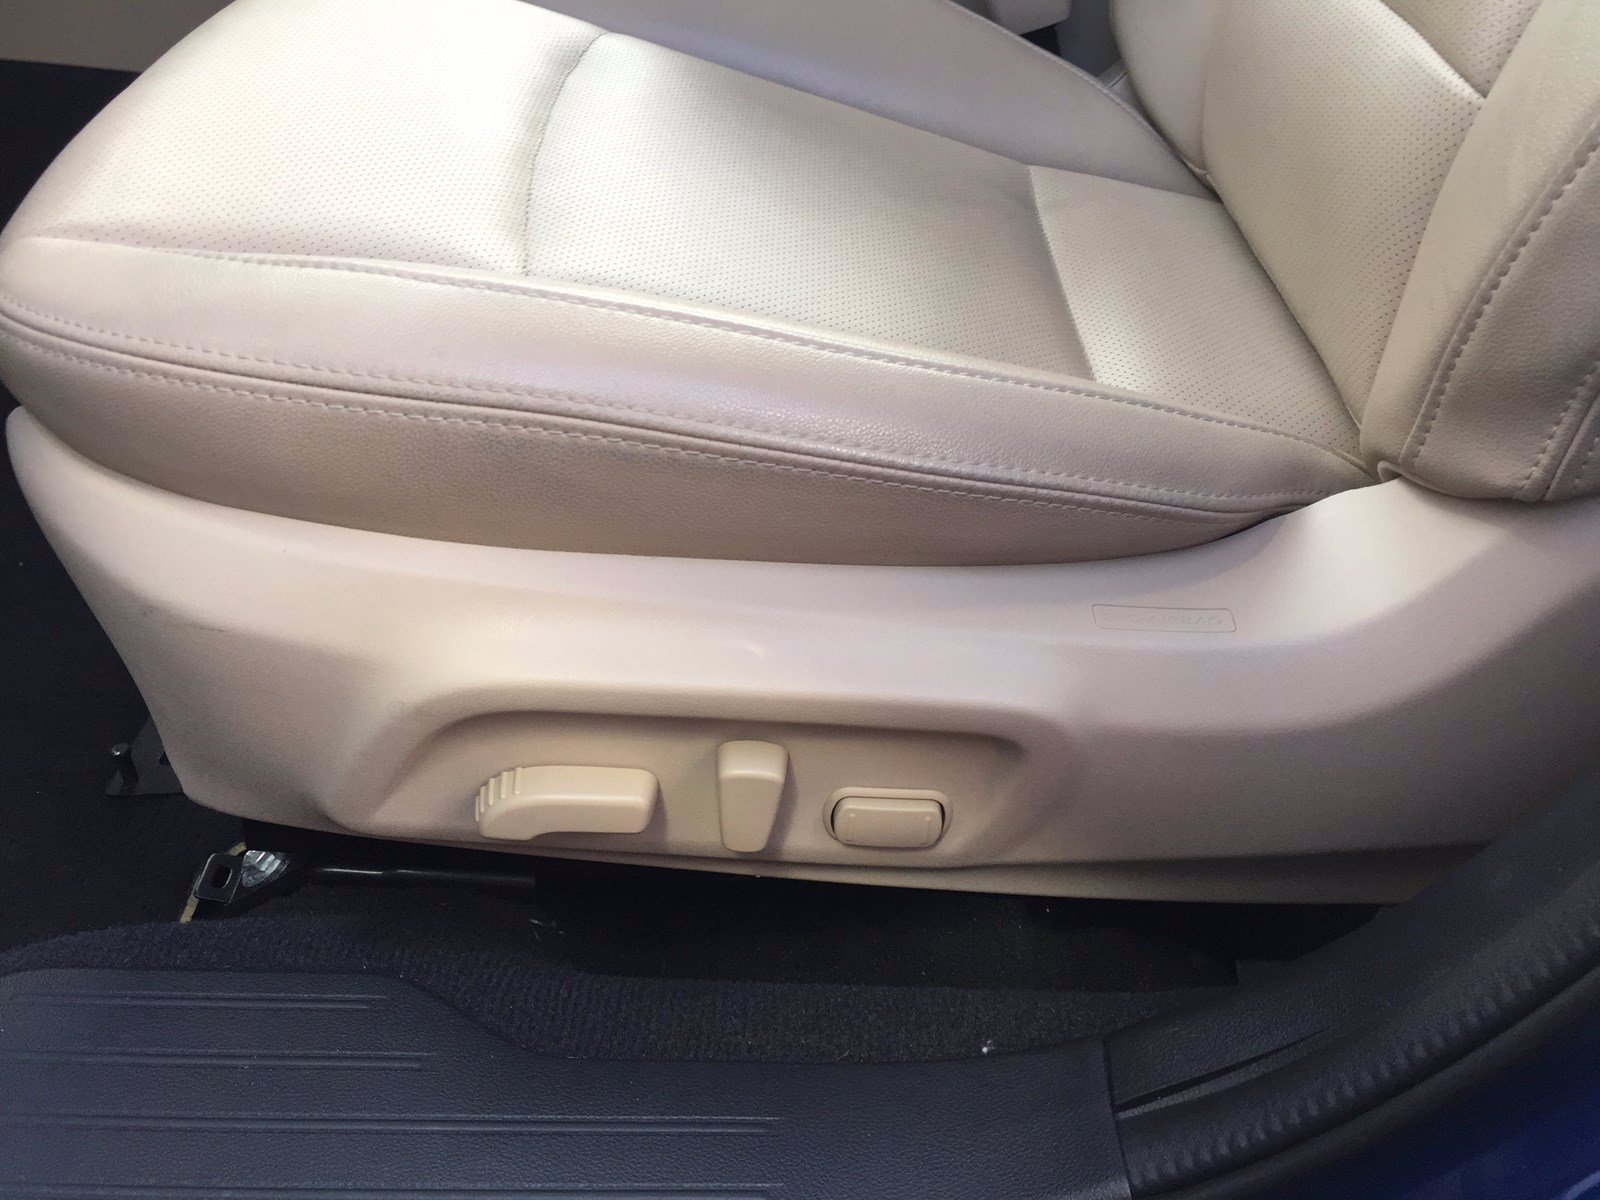 PreOwned 2016 Subaru Legacy 3.6R Limited 4dr Car in Orem